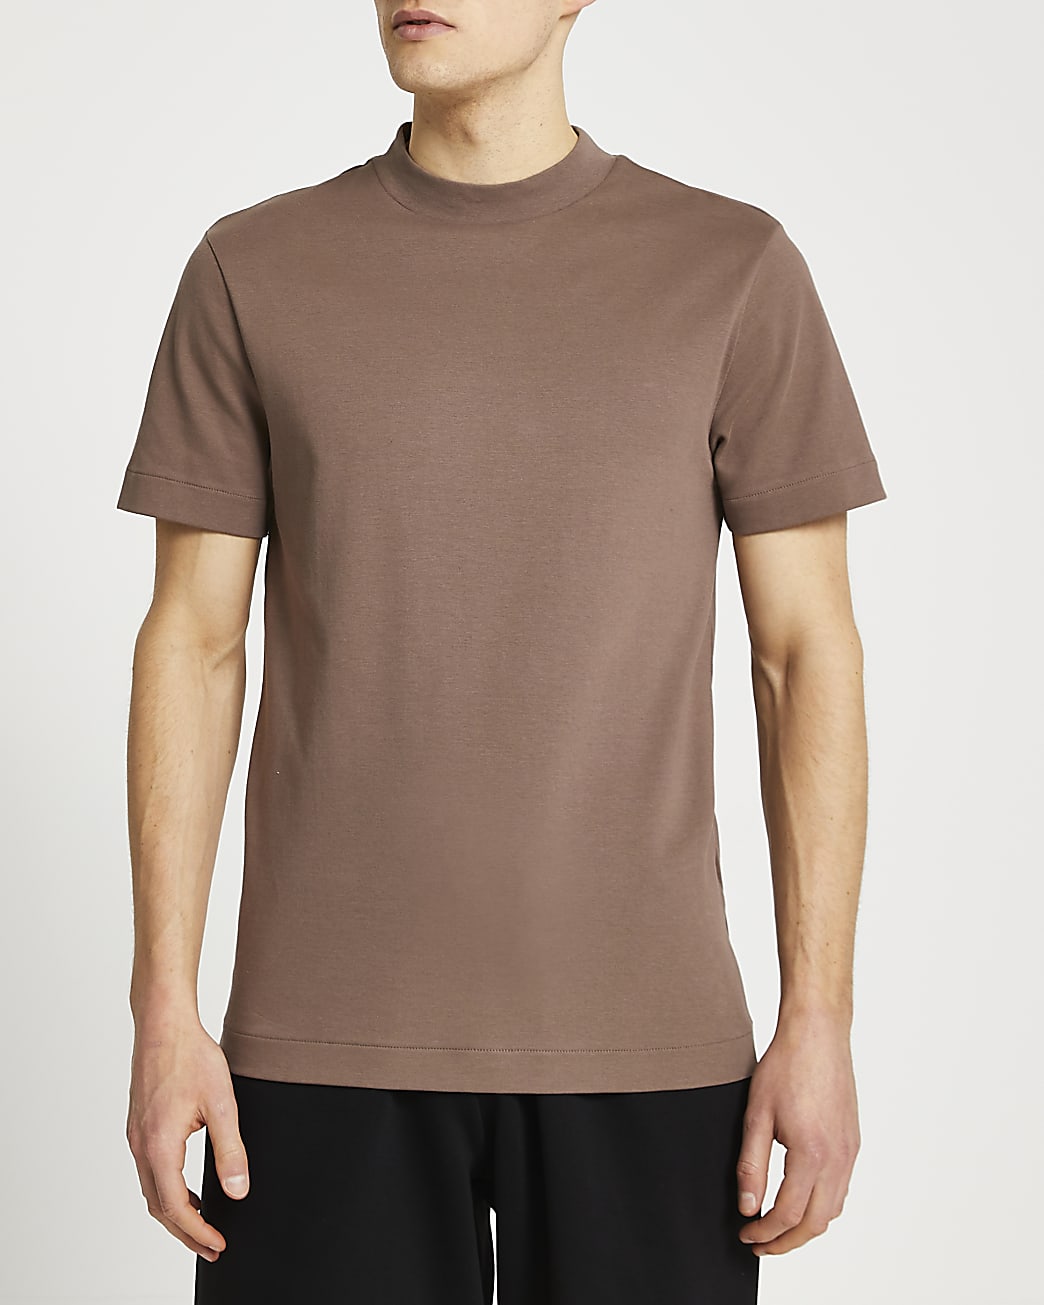 Light brown premium slim fit t-shirt